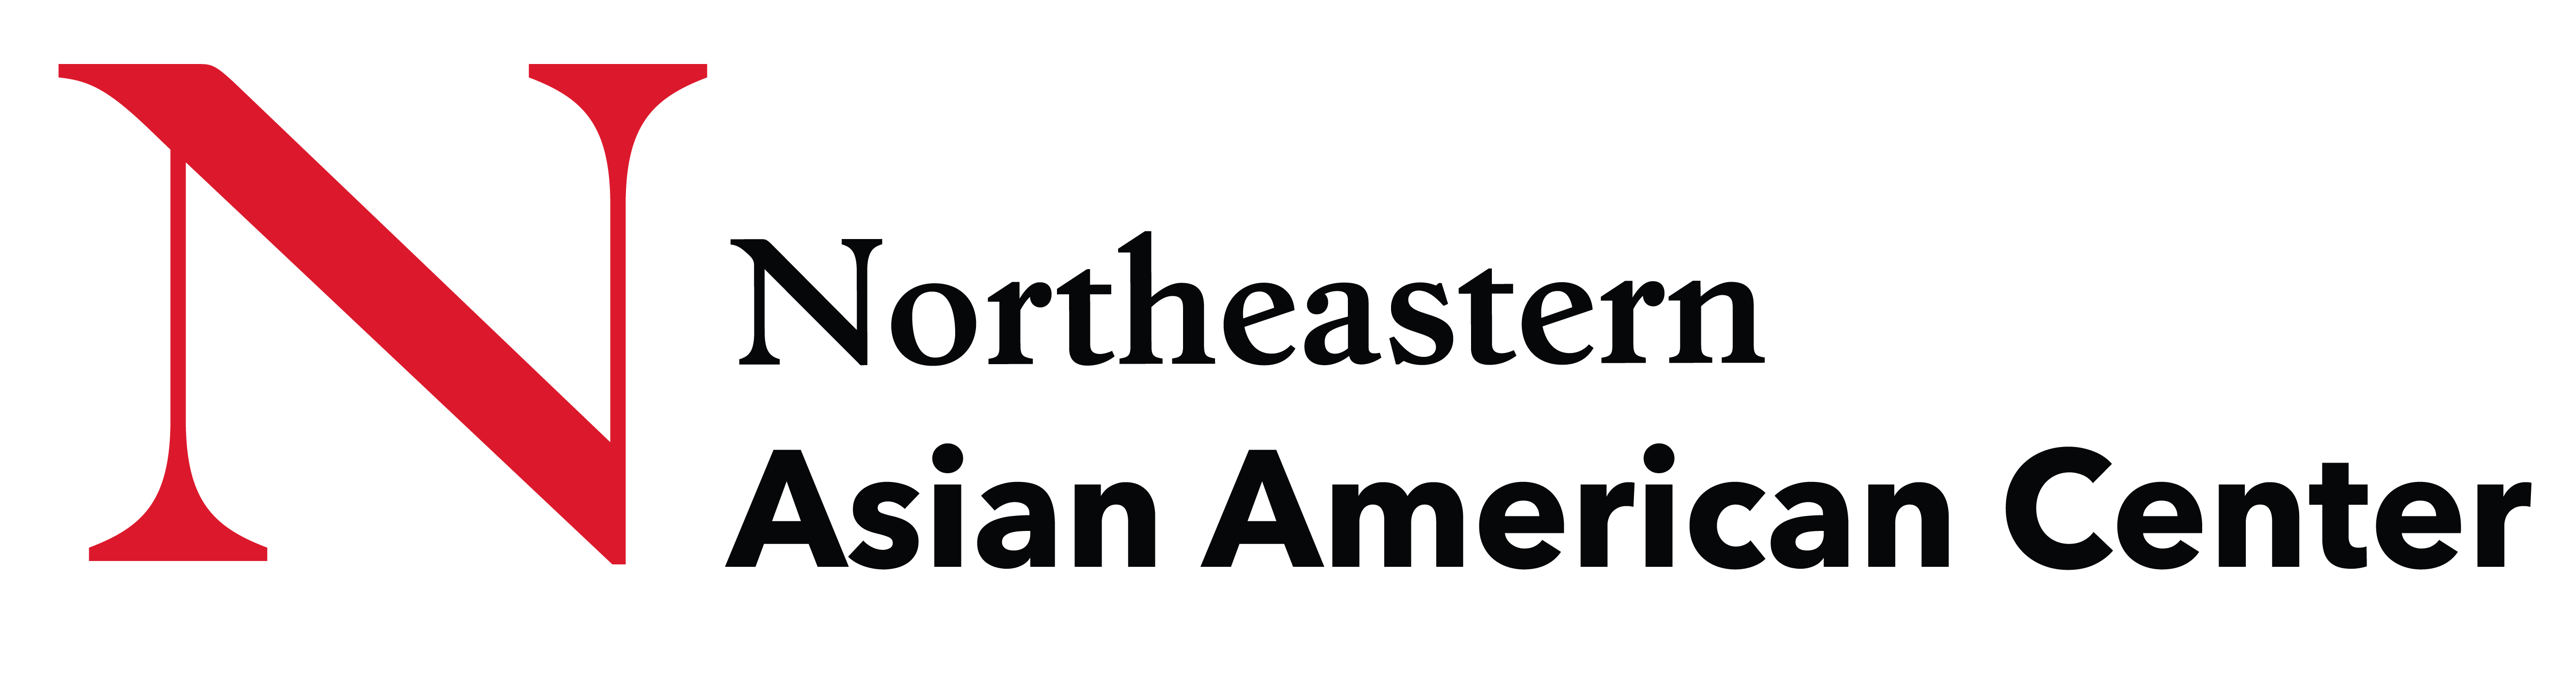 νAsianAmericanCenter R